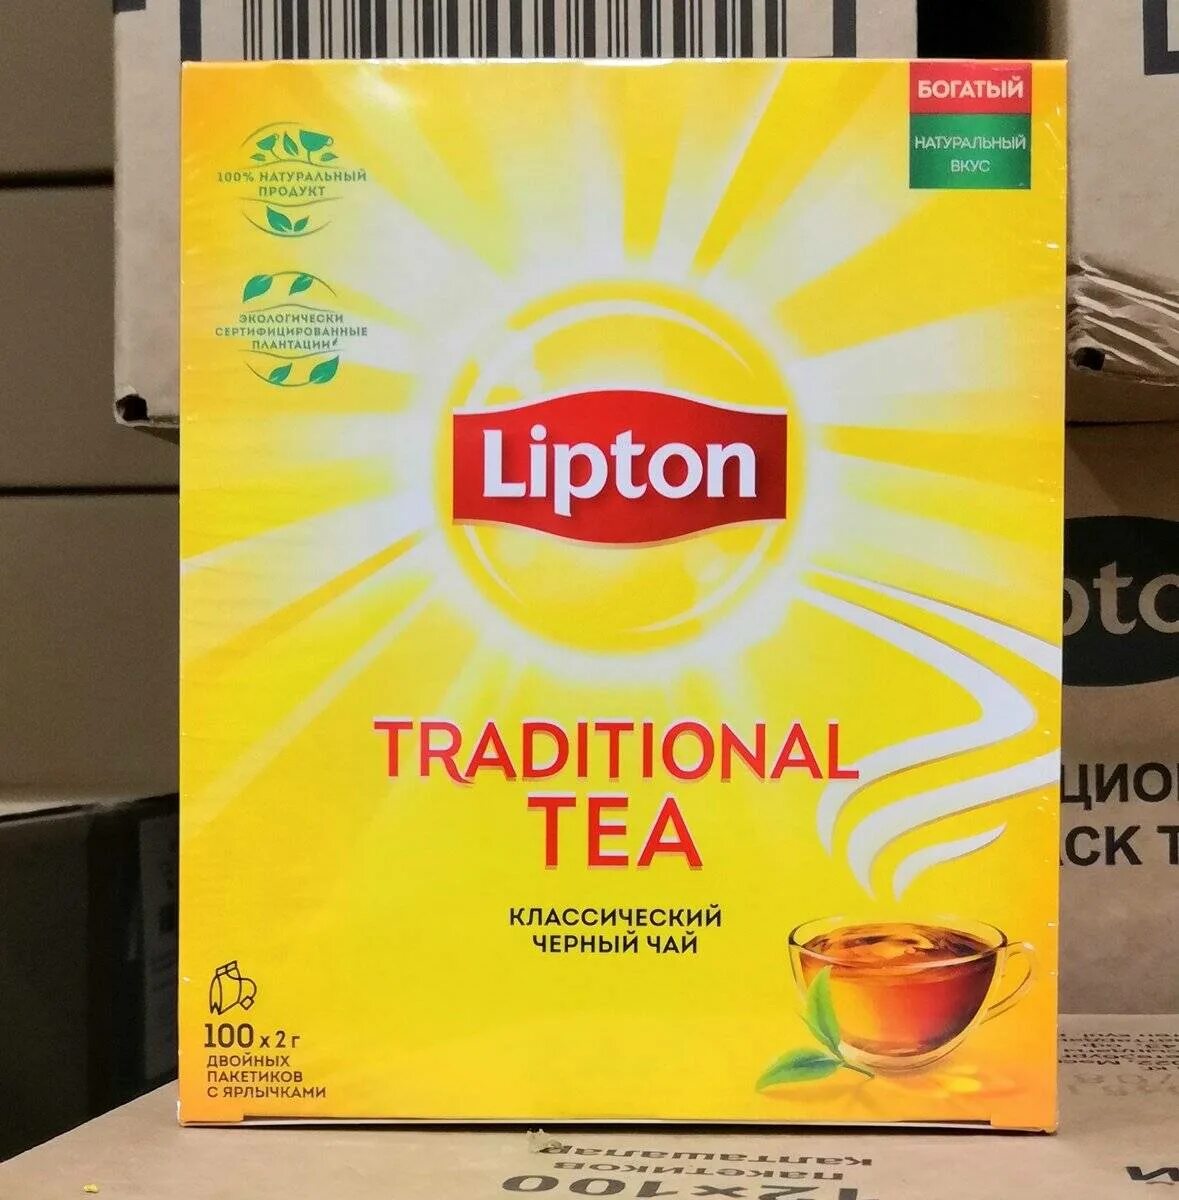 Без липтона. Липтон 100 пак. Классика. Липтон традиционный чай 100п. Чай Липтон классический 100пак. Чай черный Липтон Классик 100 пак.